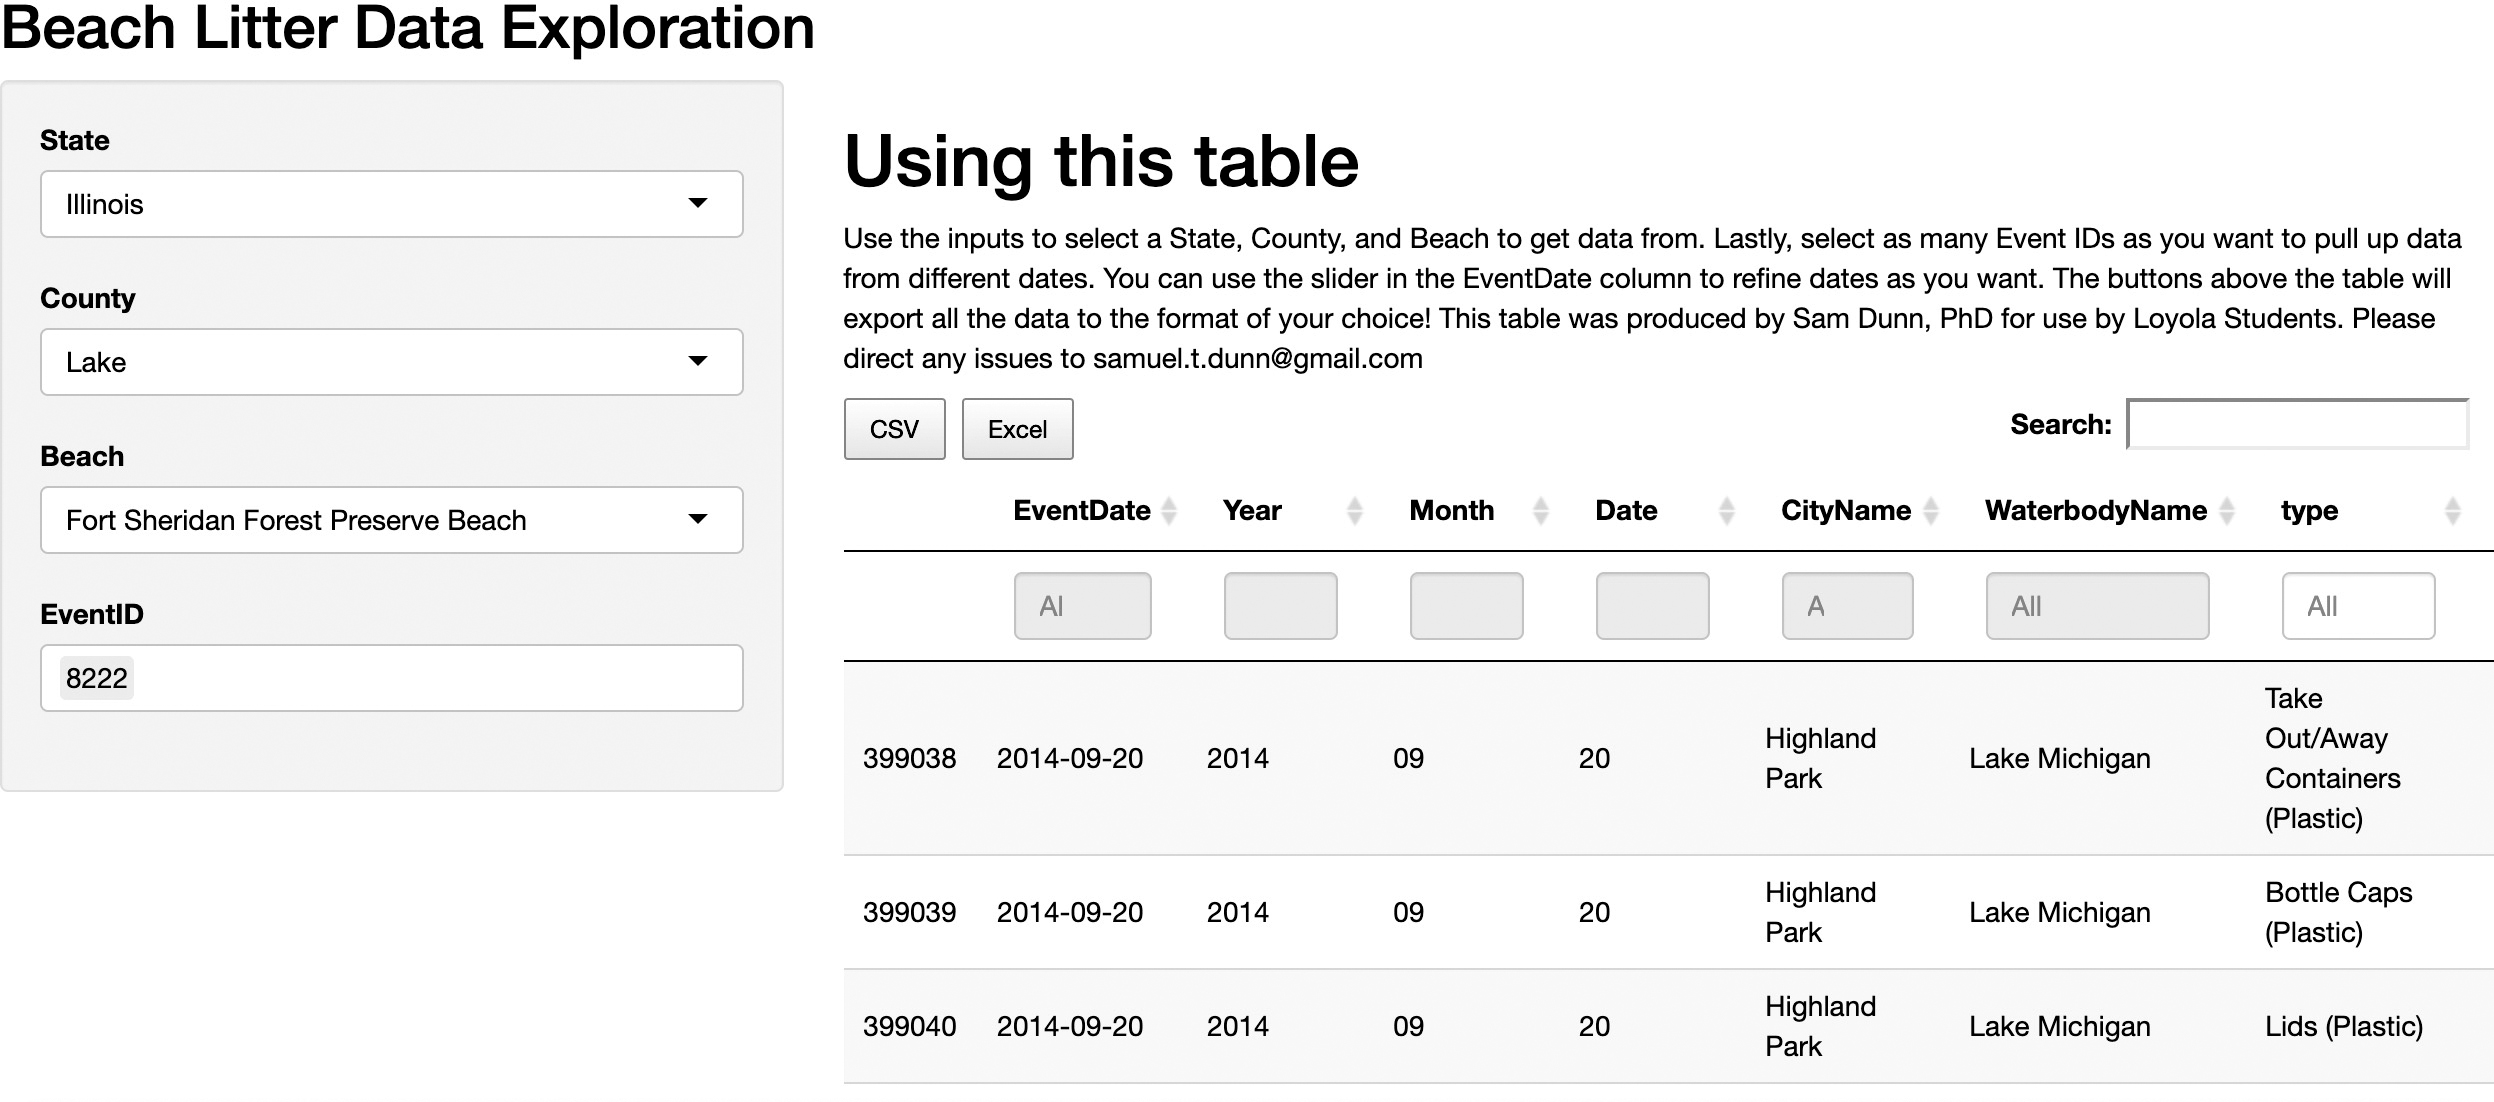 Screenshot of Beach Litter Data Exploration online interactive table